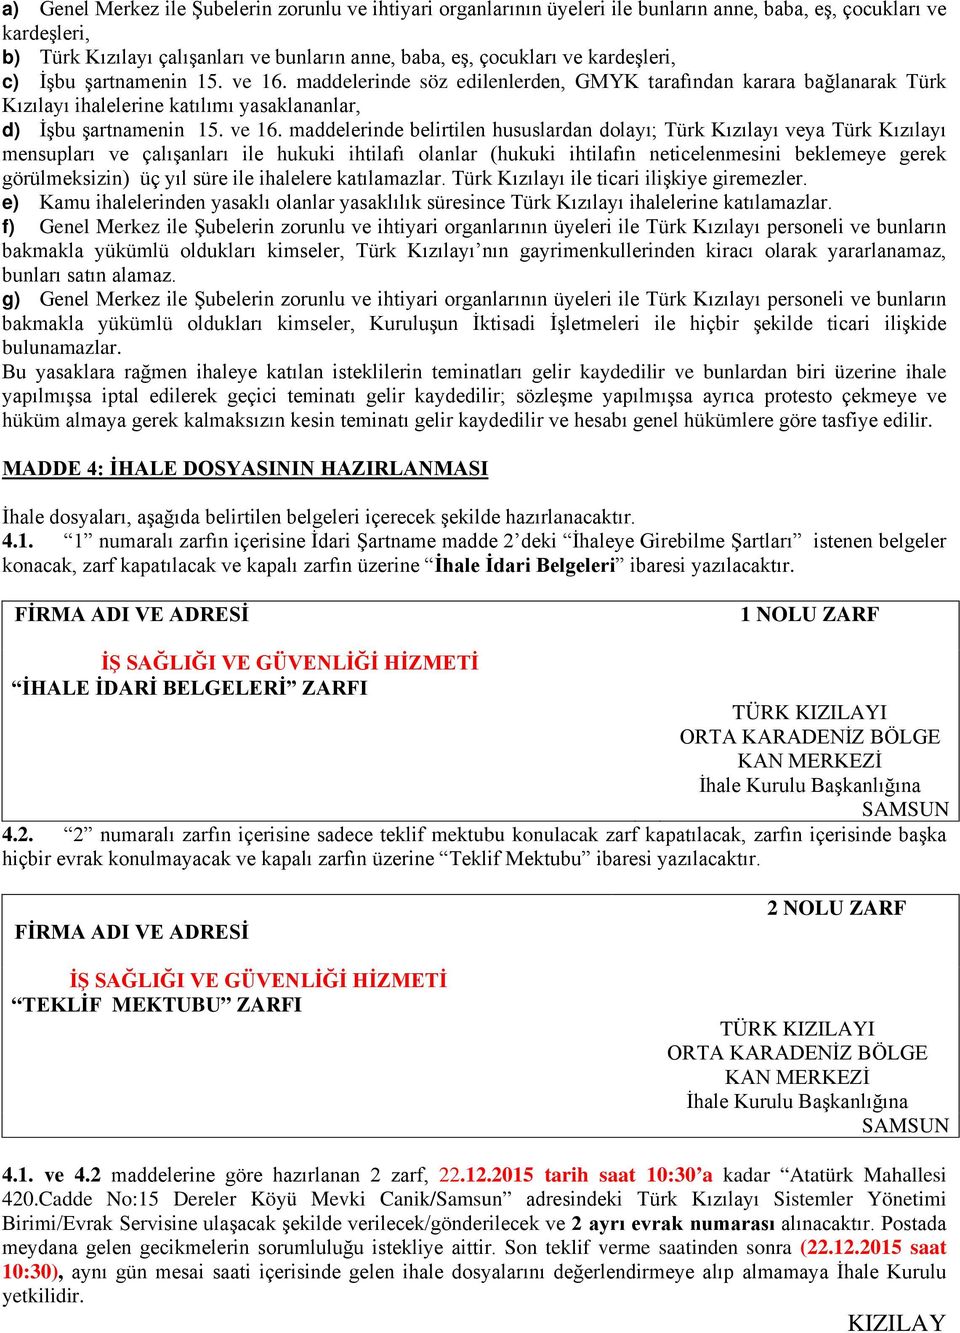 maddelerinde söz edilenlerden, GMYK tarafından karara bağlanarak Türk Kızılayı ihalelerine katılımı yasaklananlar, d) İşbu şartnamenin 15. ve 16.